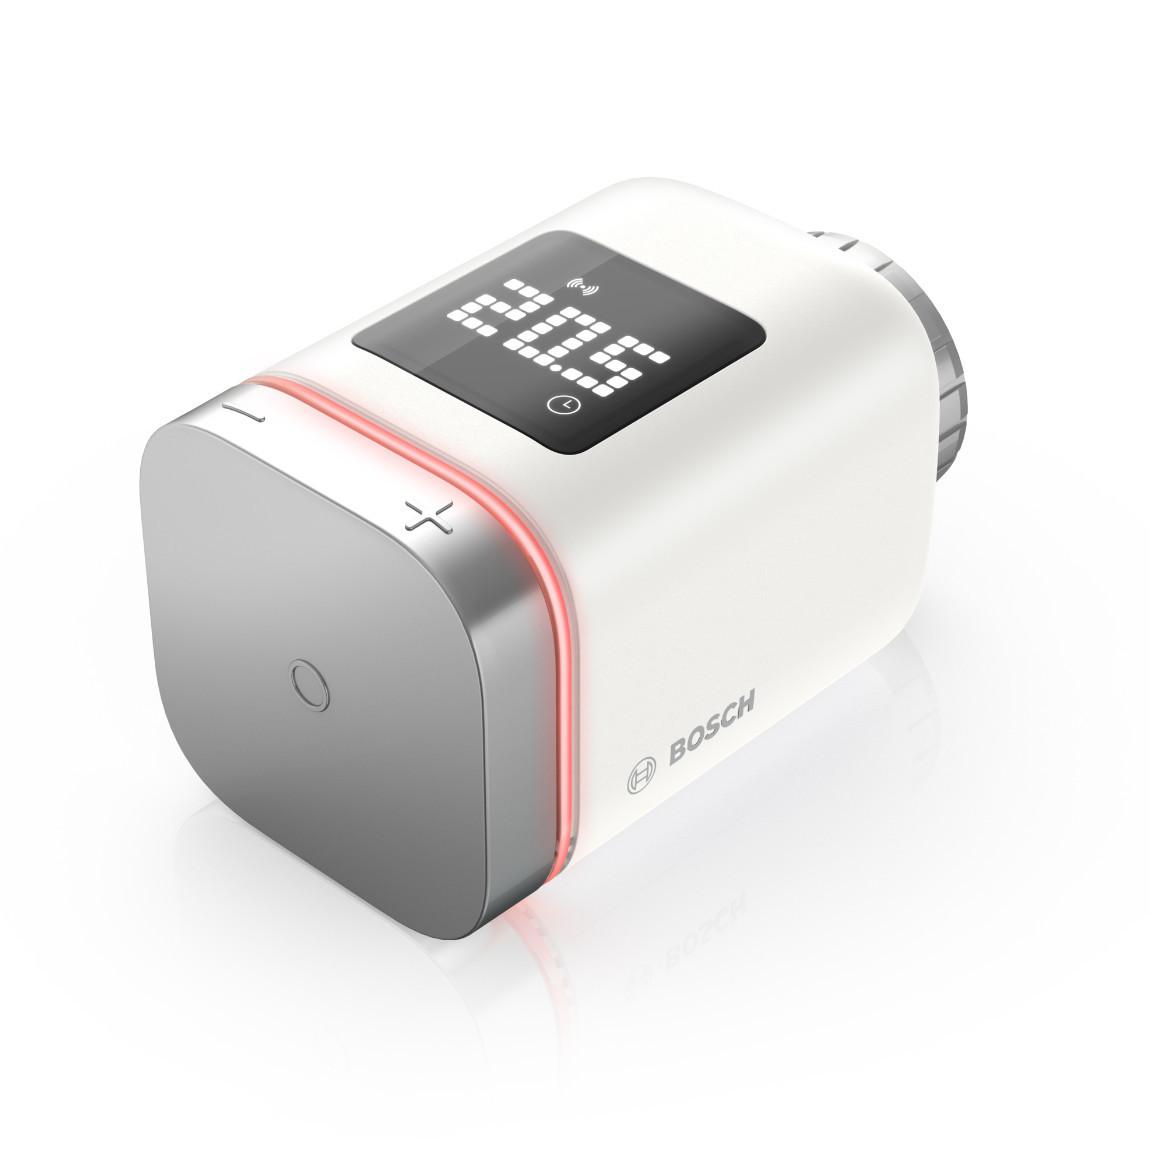 Bosch Smart Home - Erweiterungsset Heizung II mit 2 Thermostaten & 1 Raumthermostat II (Batterie)_seitlich_rot